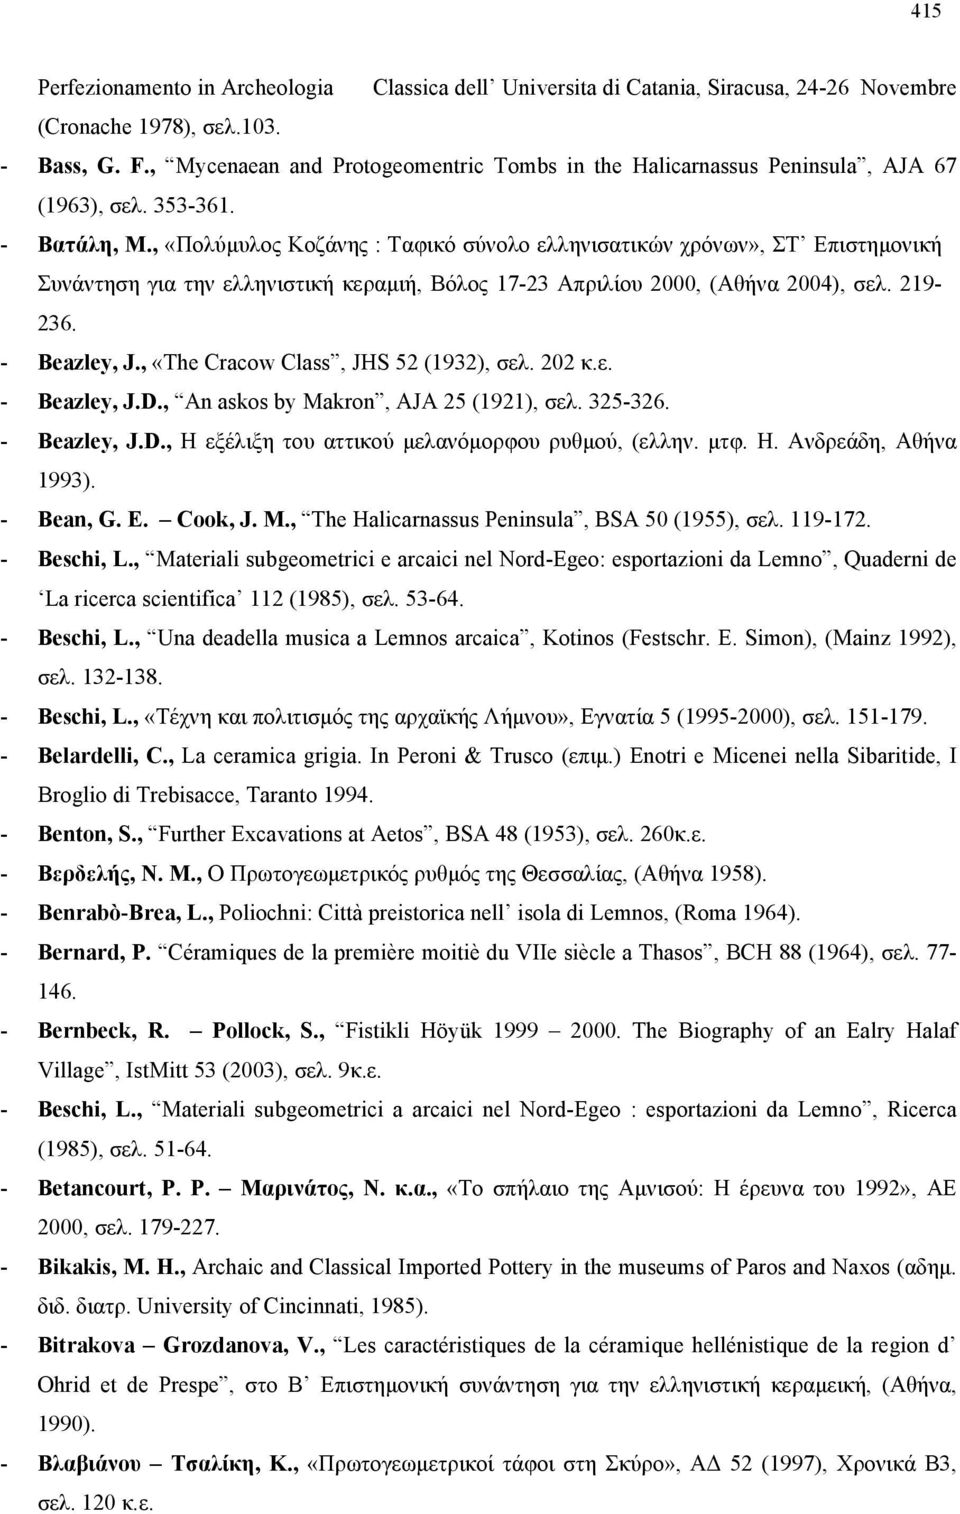 , «Πολύμυλος Κοζάνης : Ταφικό σύνολο ελληνισατικών χρόνων», ΣΤ Επιστημονική Συνάντηση για την ελληνιστική κεραμιή, Βόλος 17-23 Απριλίου 2000, (Αθήνα 2004), σελ. 219-236. - Beazley, J.